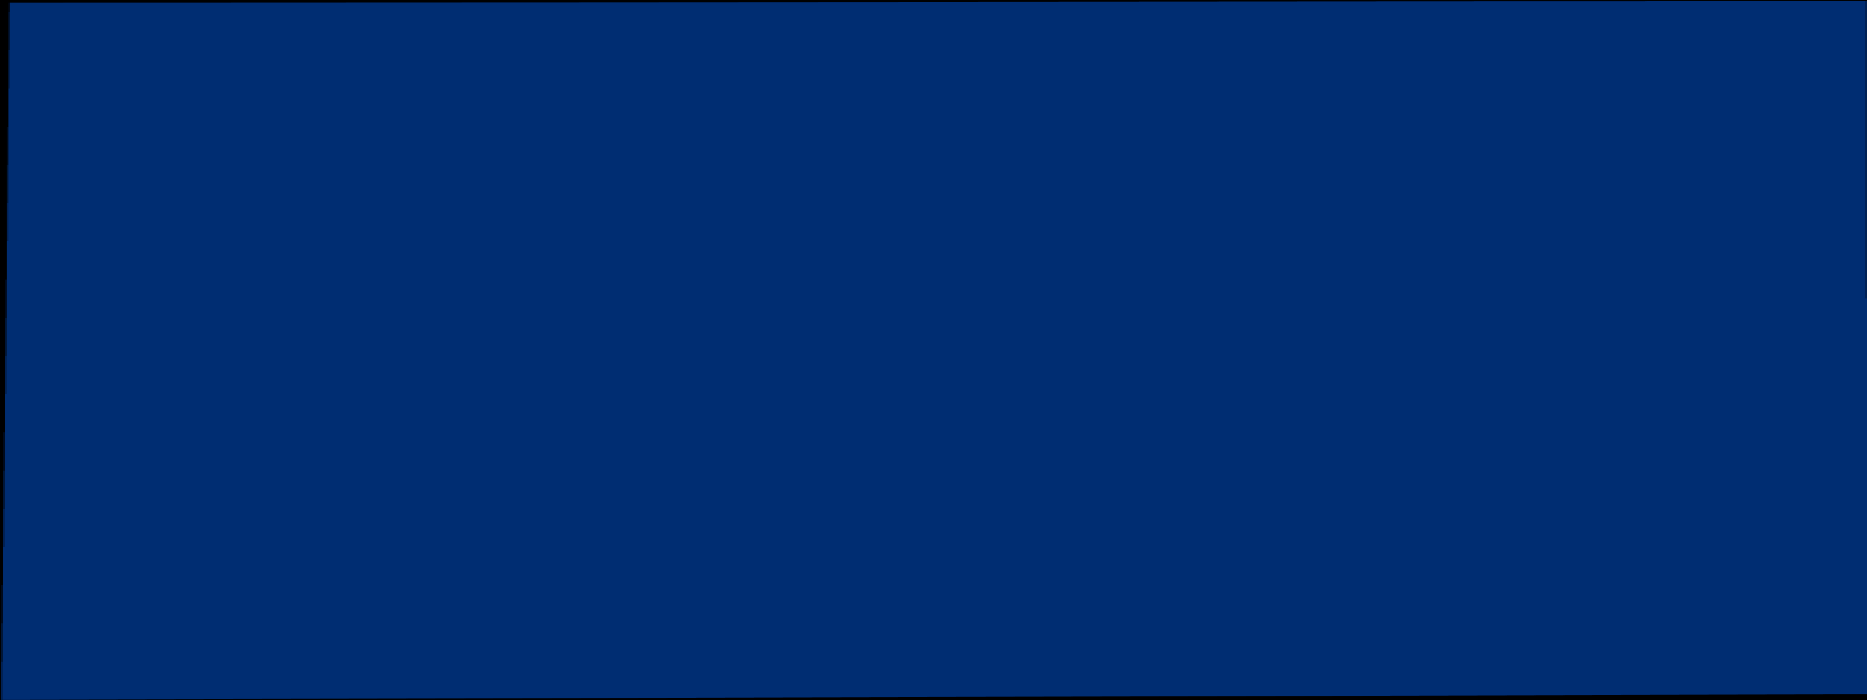 Yhteistyön ohjaus ja koordinointi AKUSTI-foorumi ja alueelliset yhteistyöverkostot* (2015-2016) Ohjausryhmä (suorat rahoittajat) Espoo, Helsinki, Jyväskylä, Kuopio, Oulu, Tampere, Turku, Vantaa